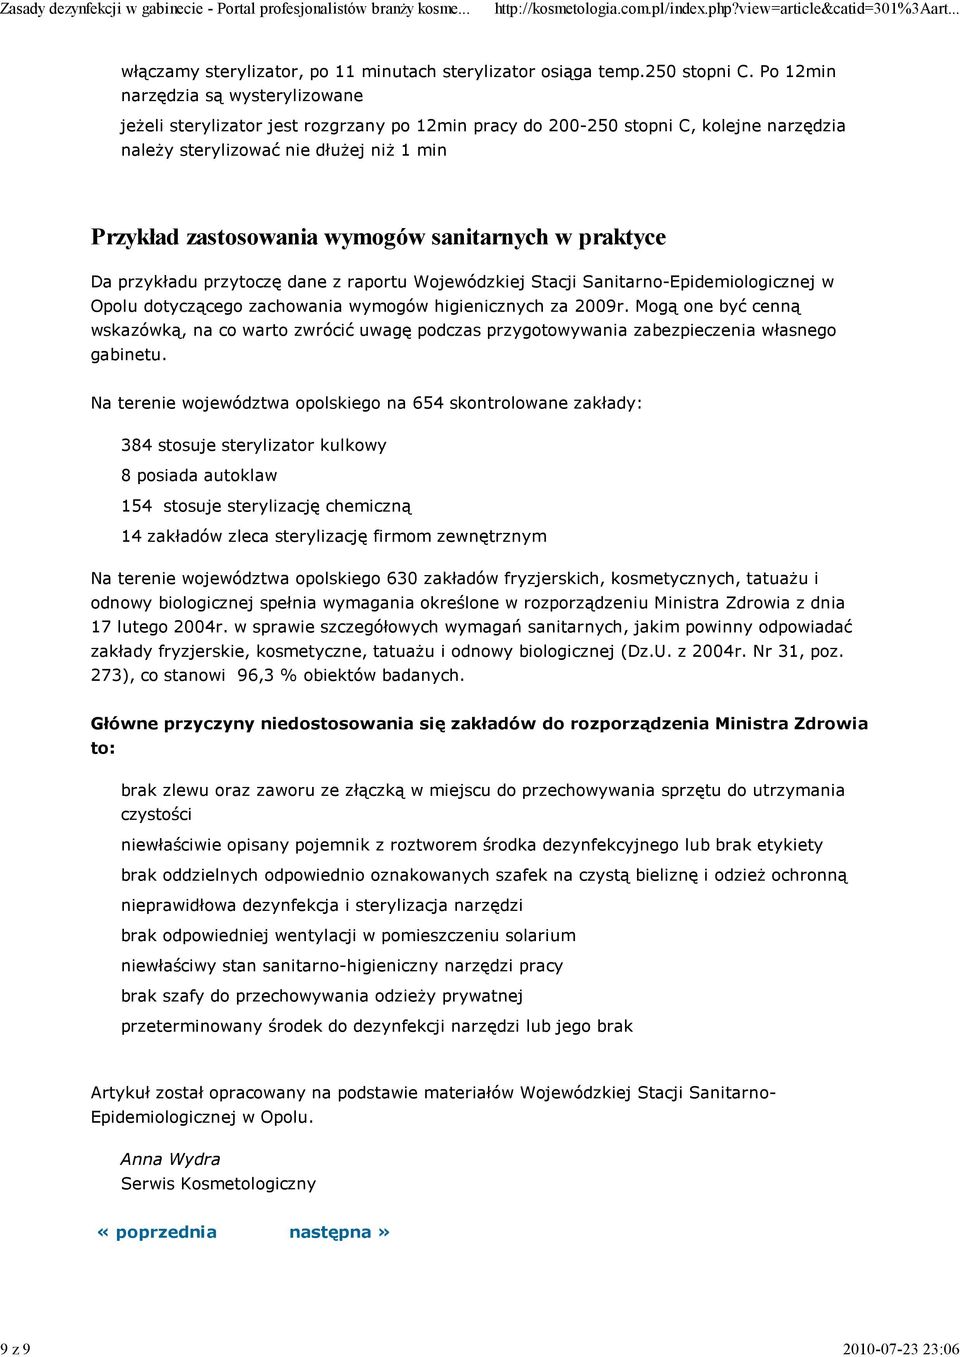 sanitarnych w praktyce Da przykładu przytoczę dane z raportu Wojewódzkiej Stacji Sanitarno-Epidemiologicznej w Opolu dotyczącego zachowania wymogów higienicznych za 2009r.